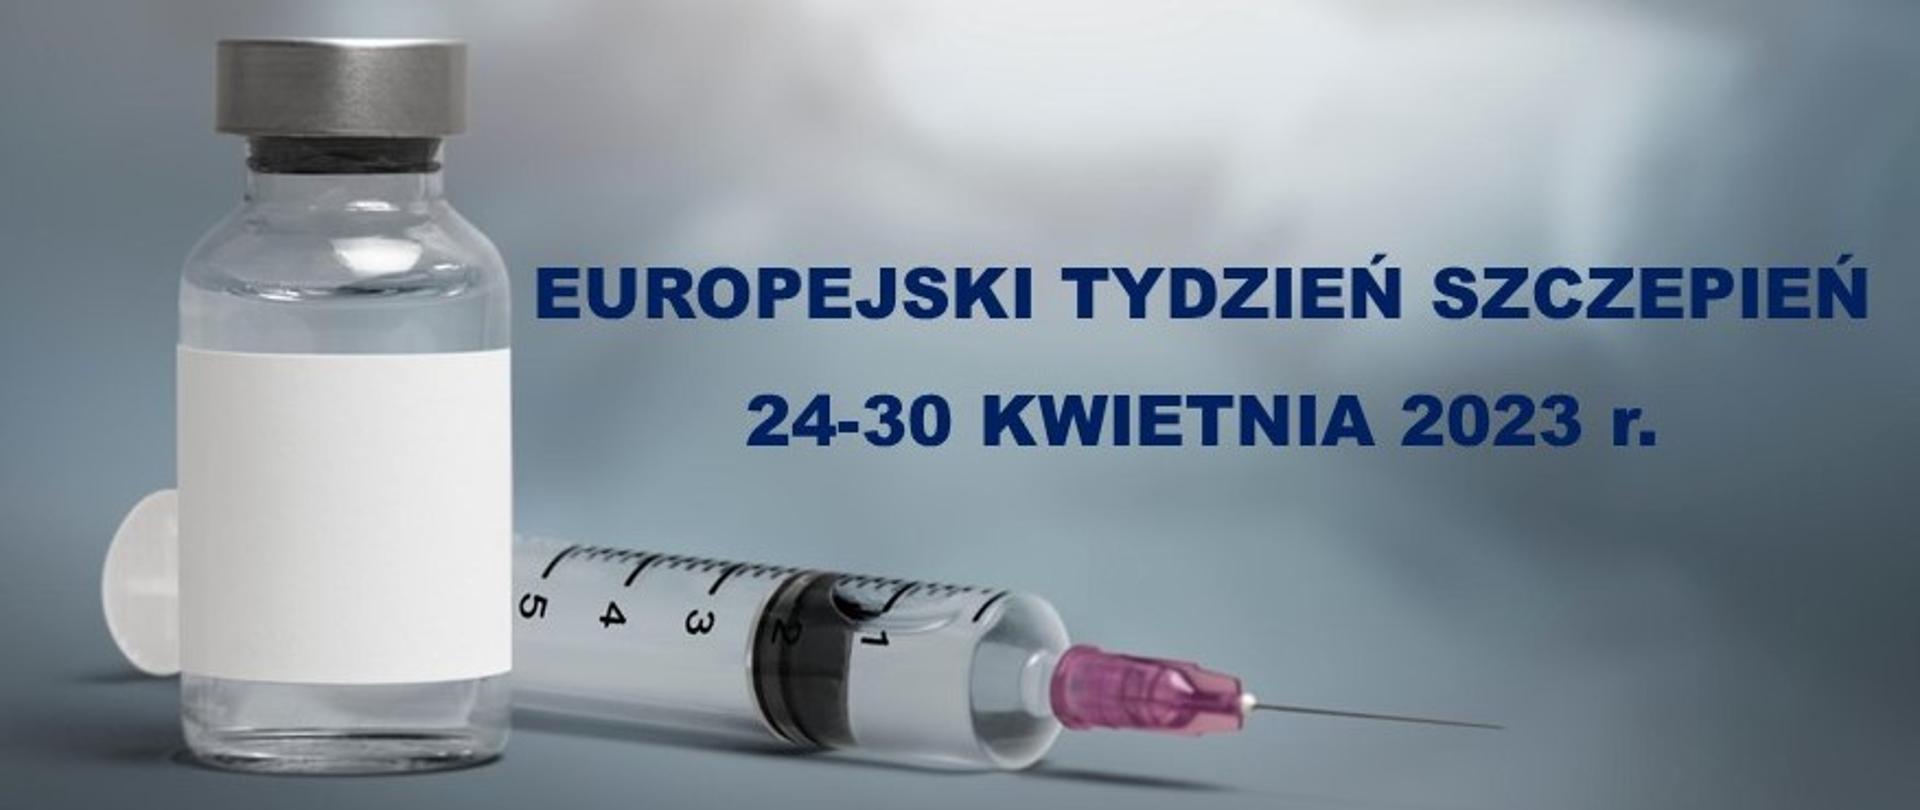 grafika kolorowa, ampułka ze szczepionką strzykawka, napis Europejski Tydzień Szczepień 24-30 kwietnia 2023 r.